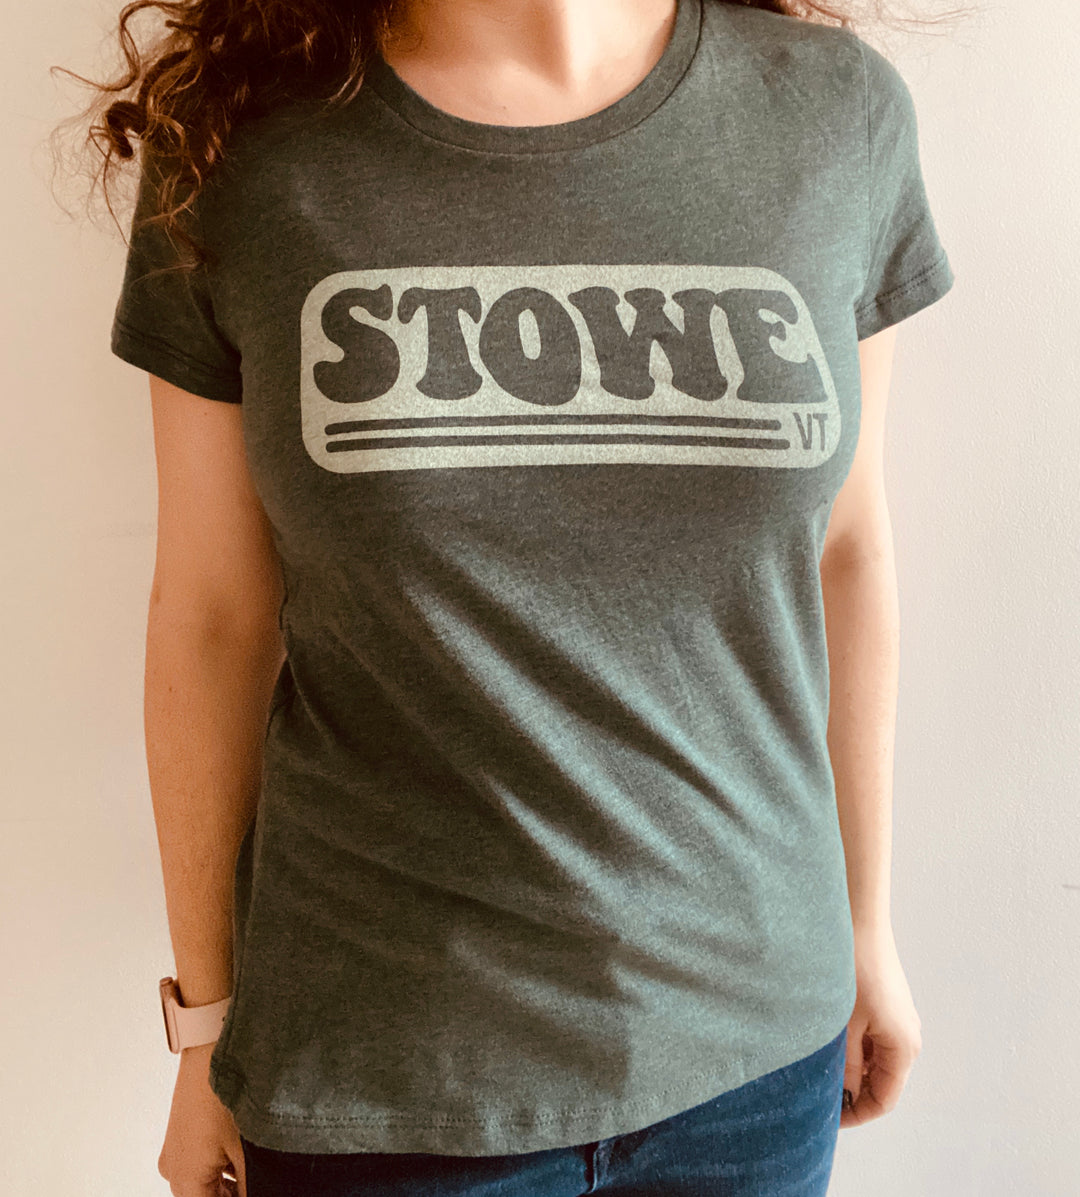 Stowe Women's T-Shirt